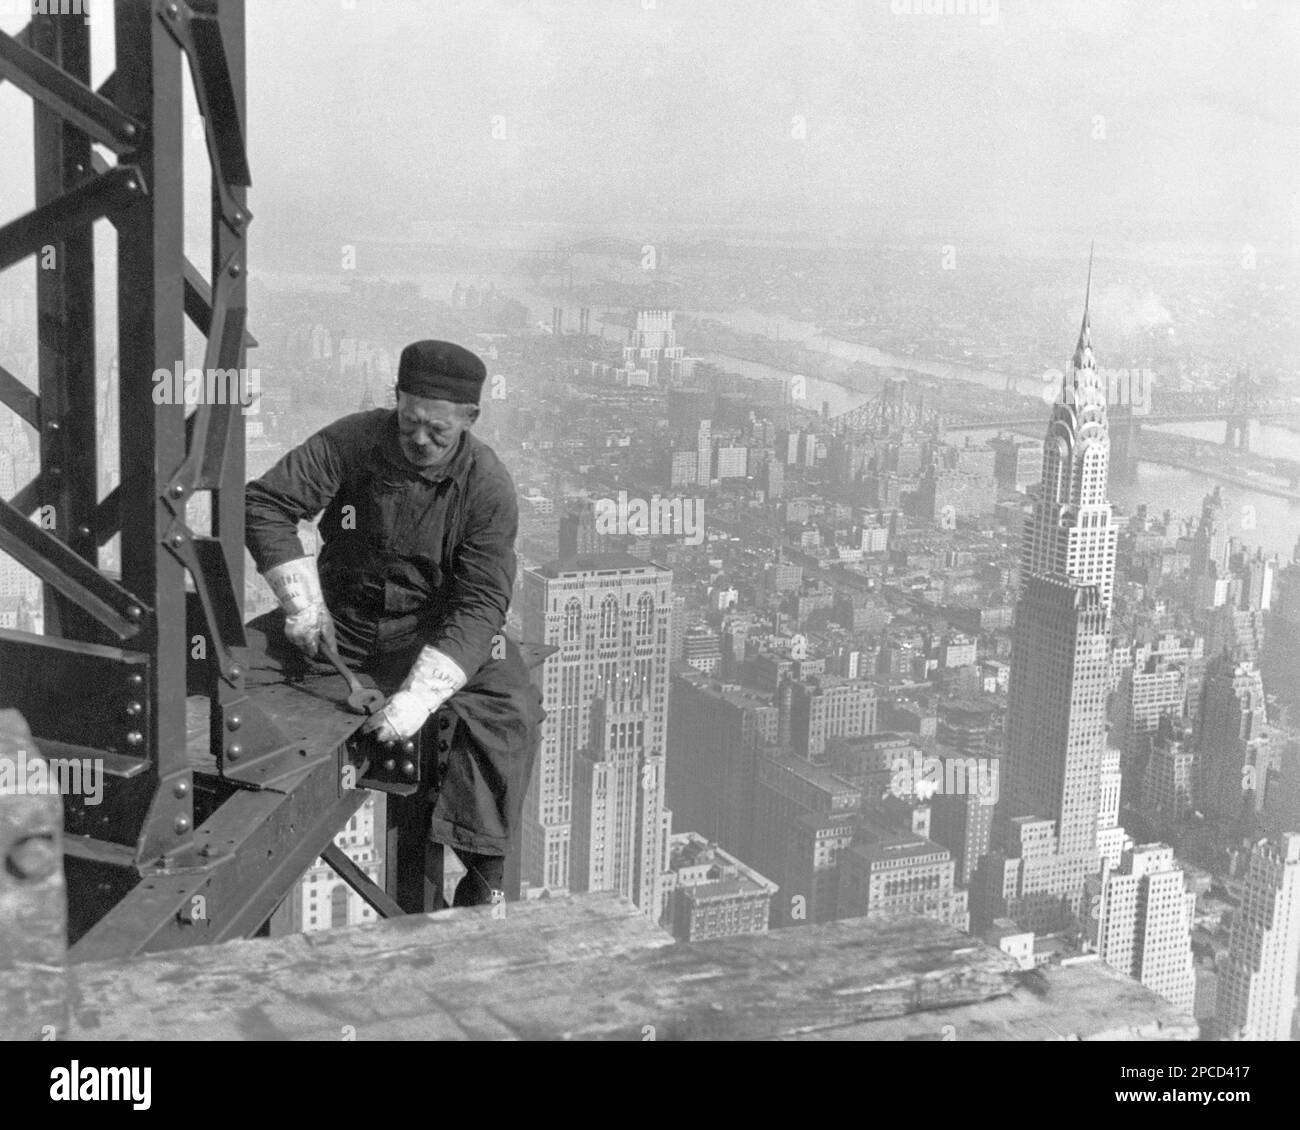 1930 , Nueva York, NY, Estados Unidos : 'Old-timer, -- Manteniéndose al día con los chicos. Muchos trabajadores estructurales están por encima de la mediana edad. Empire State Building ', foto tomada por el célebre fotógrafo y sociólogo estadounidense LEWIS Hine ( 1874 - 1940 ) para la obra Administración de Proyectos. De EE.UU. Gobernar. Hine utilizó su cámara como herramienta para la reforma social. - ANTIGUO VIEJO - UOMO ANZIANO VECCHIO - LAVORO - TRABAJO - LAVORATORE - TRABAJADOR - OPERAIO - CLASSE OPERAIA LAVORATRICE - CLASE OPERAI - LAVORATORI - LAVORATORI - LAVORO EN CANTIERE - TRAVI D' ACCIAIO - ACERO - HIERRO - GRATTACIELO - PANORAMA - VERTIGINE - VERTIGINE - VERTIGINE - Foto de stock